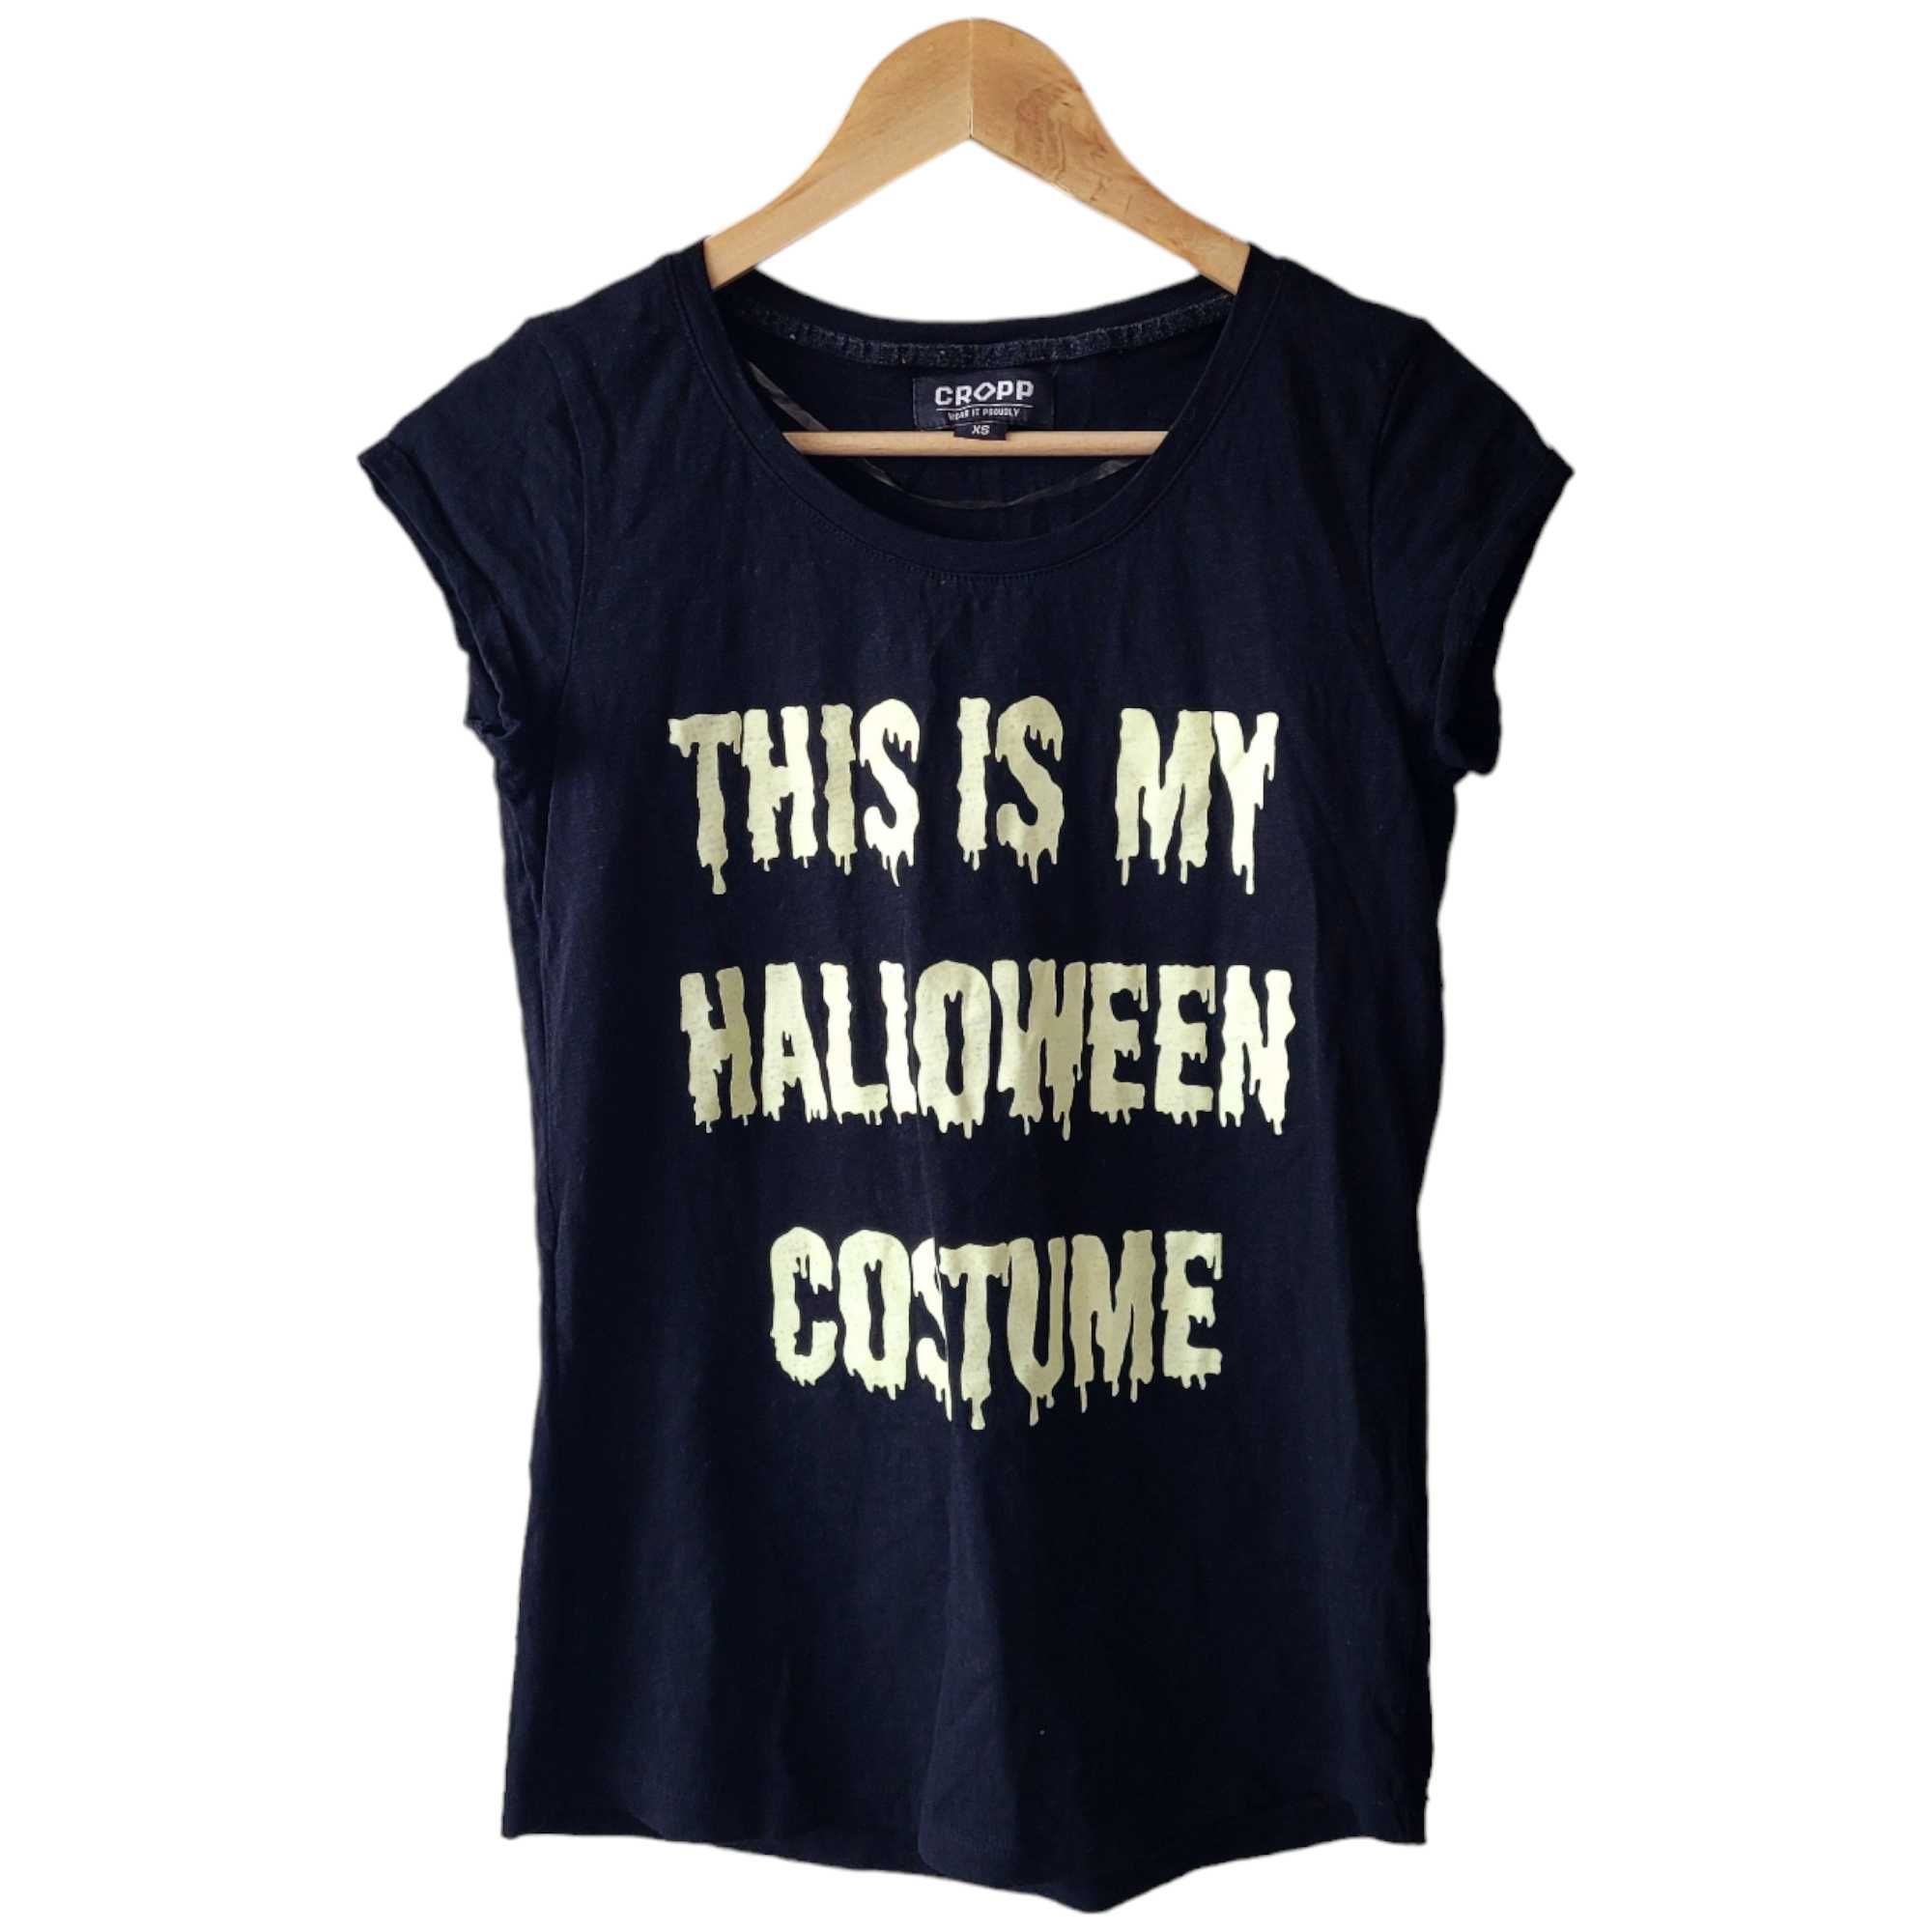 Czarny bawełniany t-shirt damski XS fluorescencyjny napis halloween